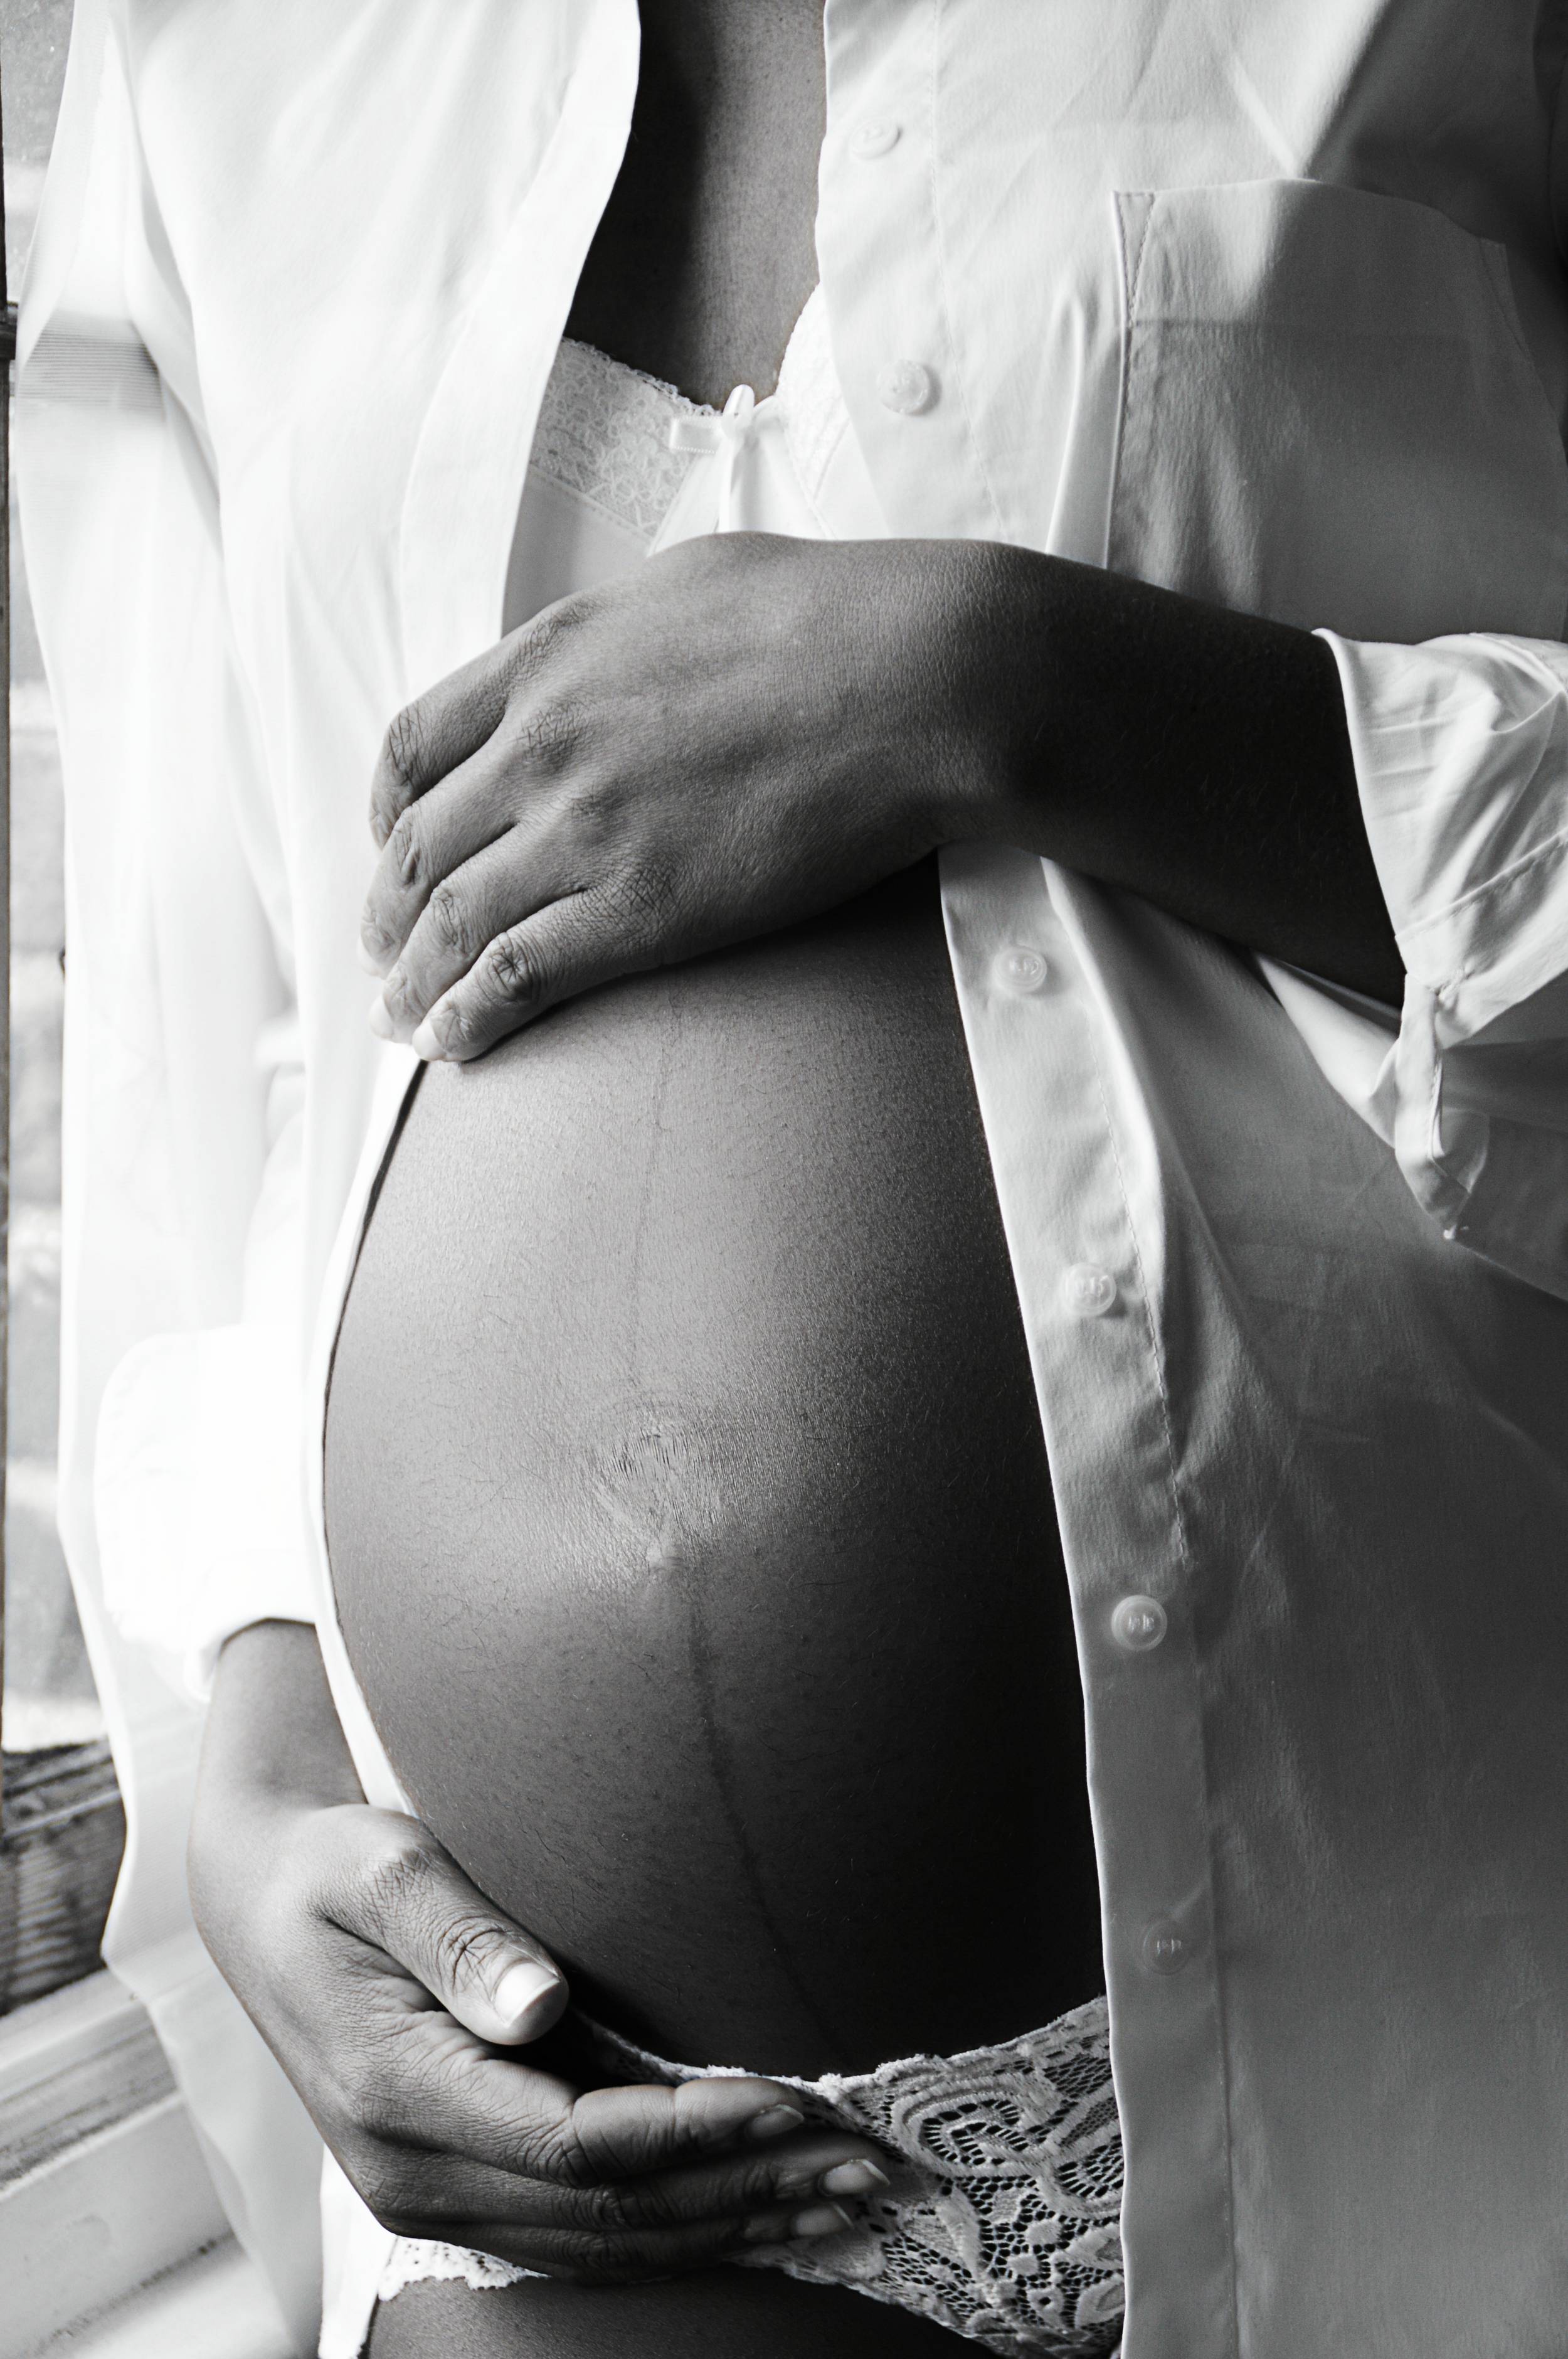 pregnancy-belly-in-black-and-white-2022-11-11-06-21-40-utc_oNGojTDiZ.jpg